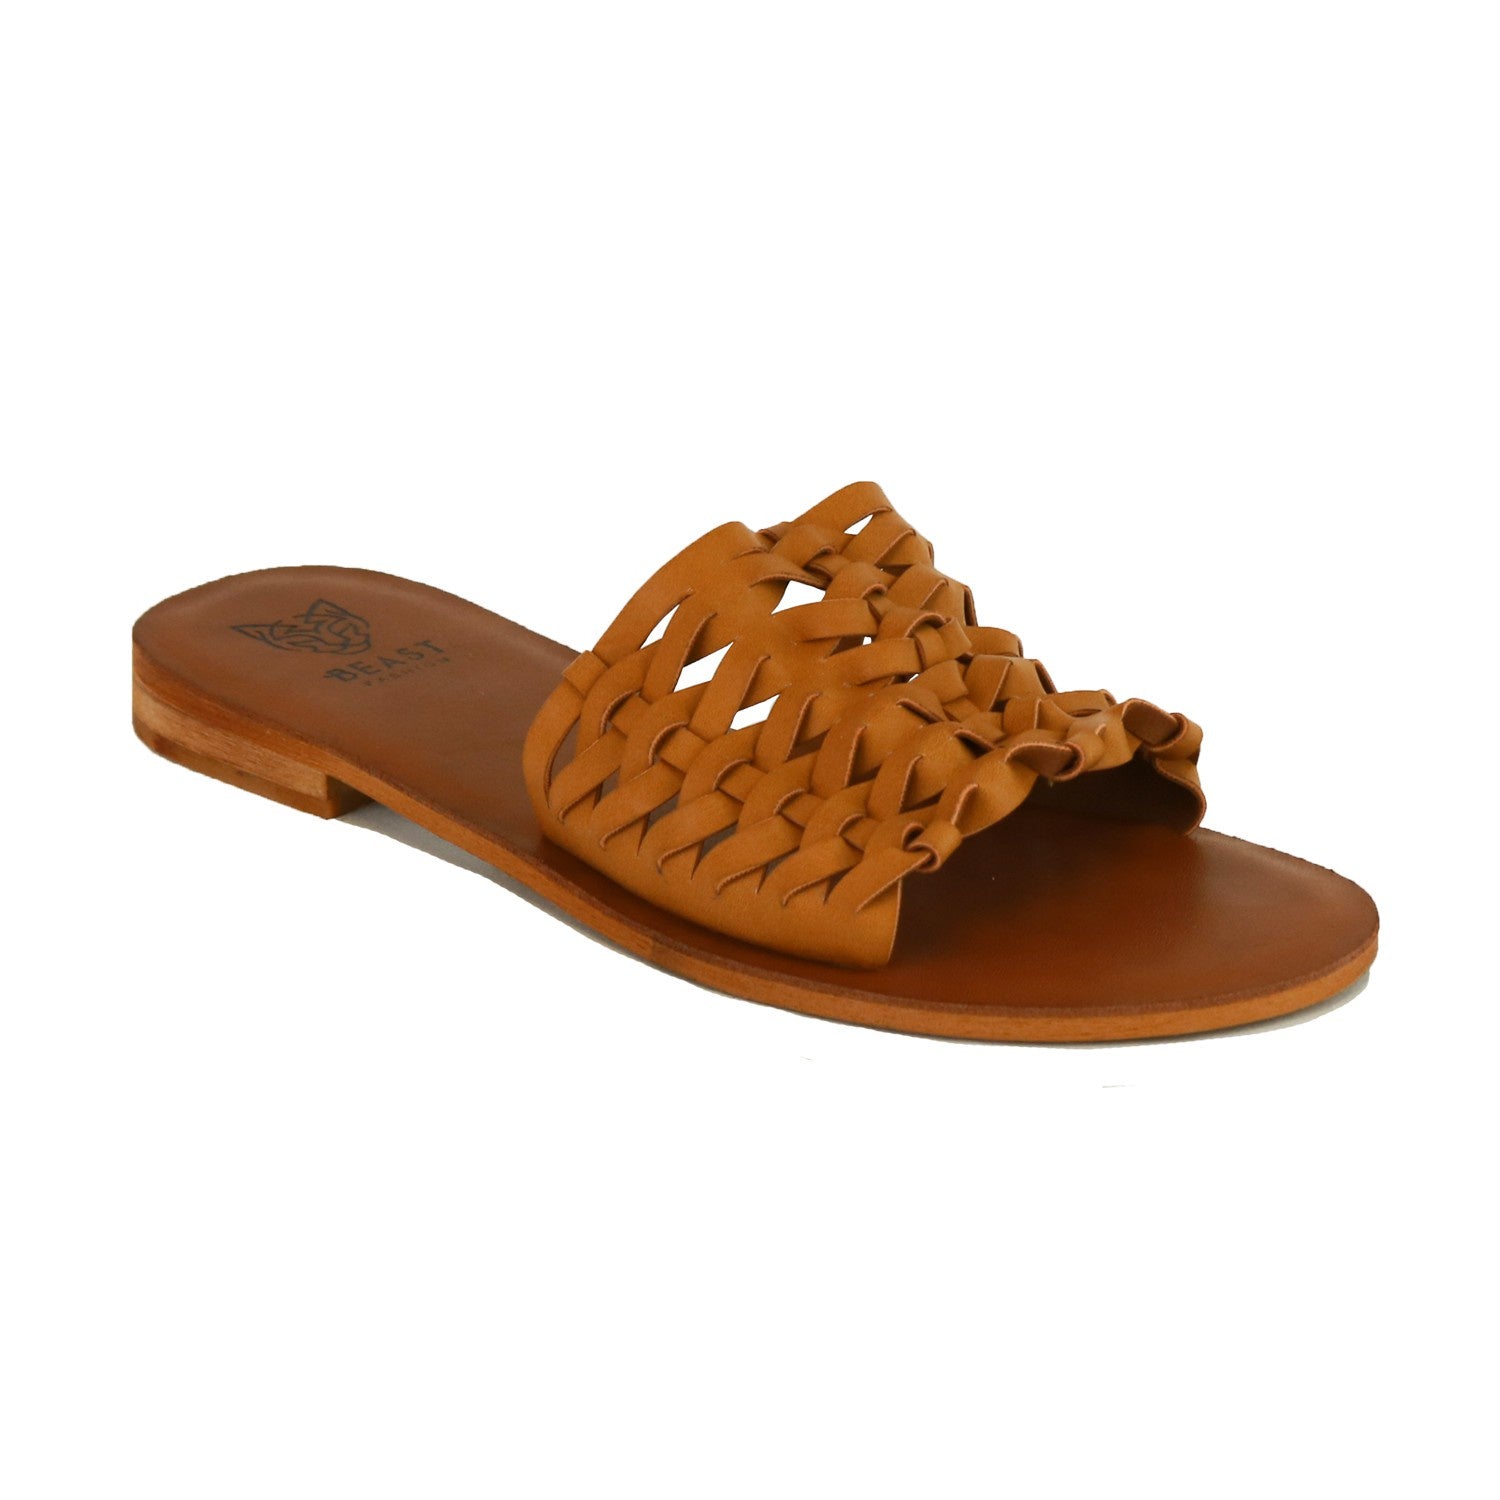 The Malani Woven Strap Sandals